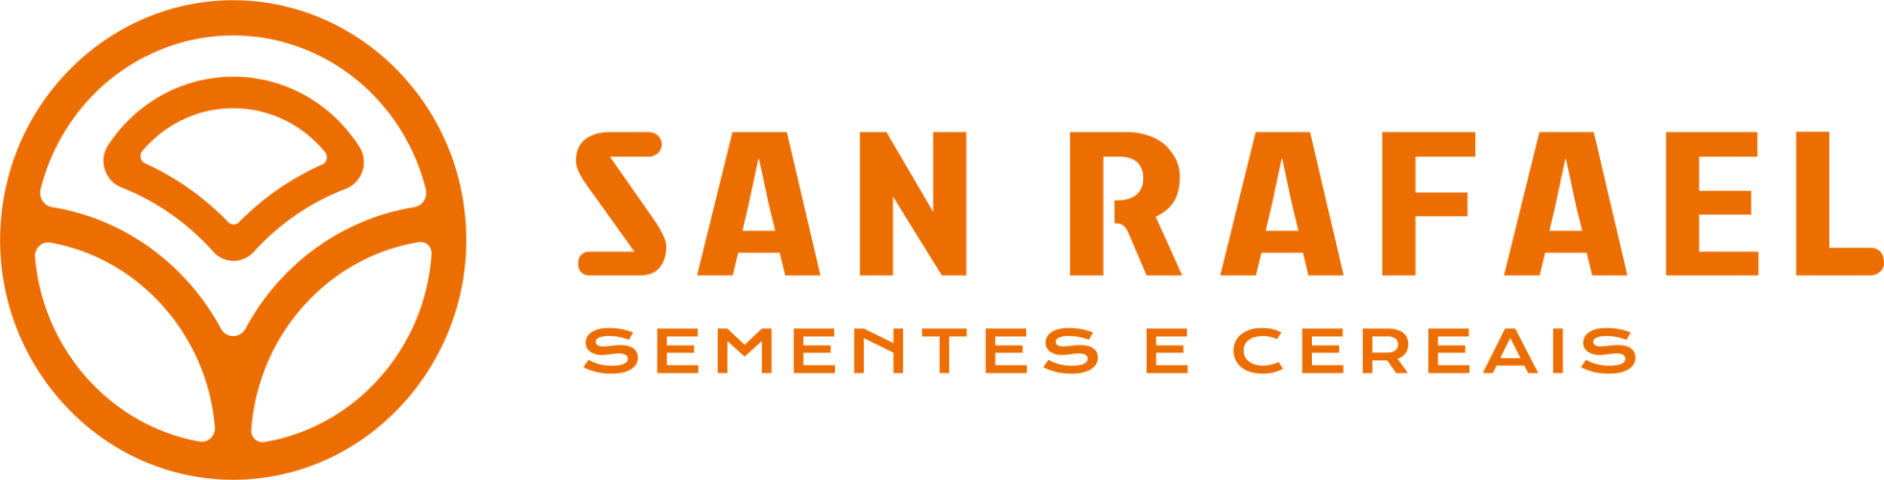 San Rafael Sementes e Cereais - Logo